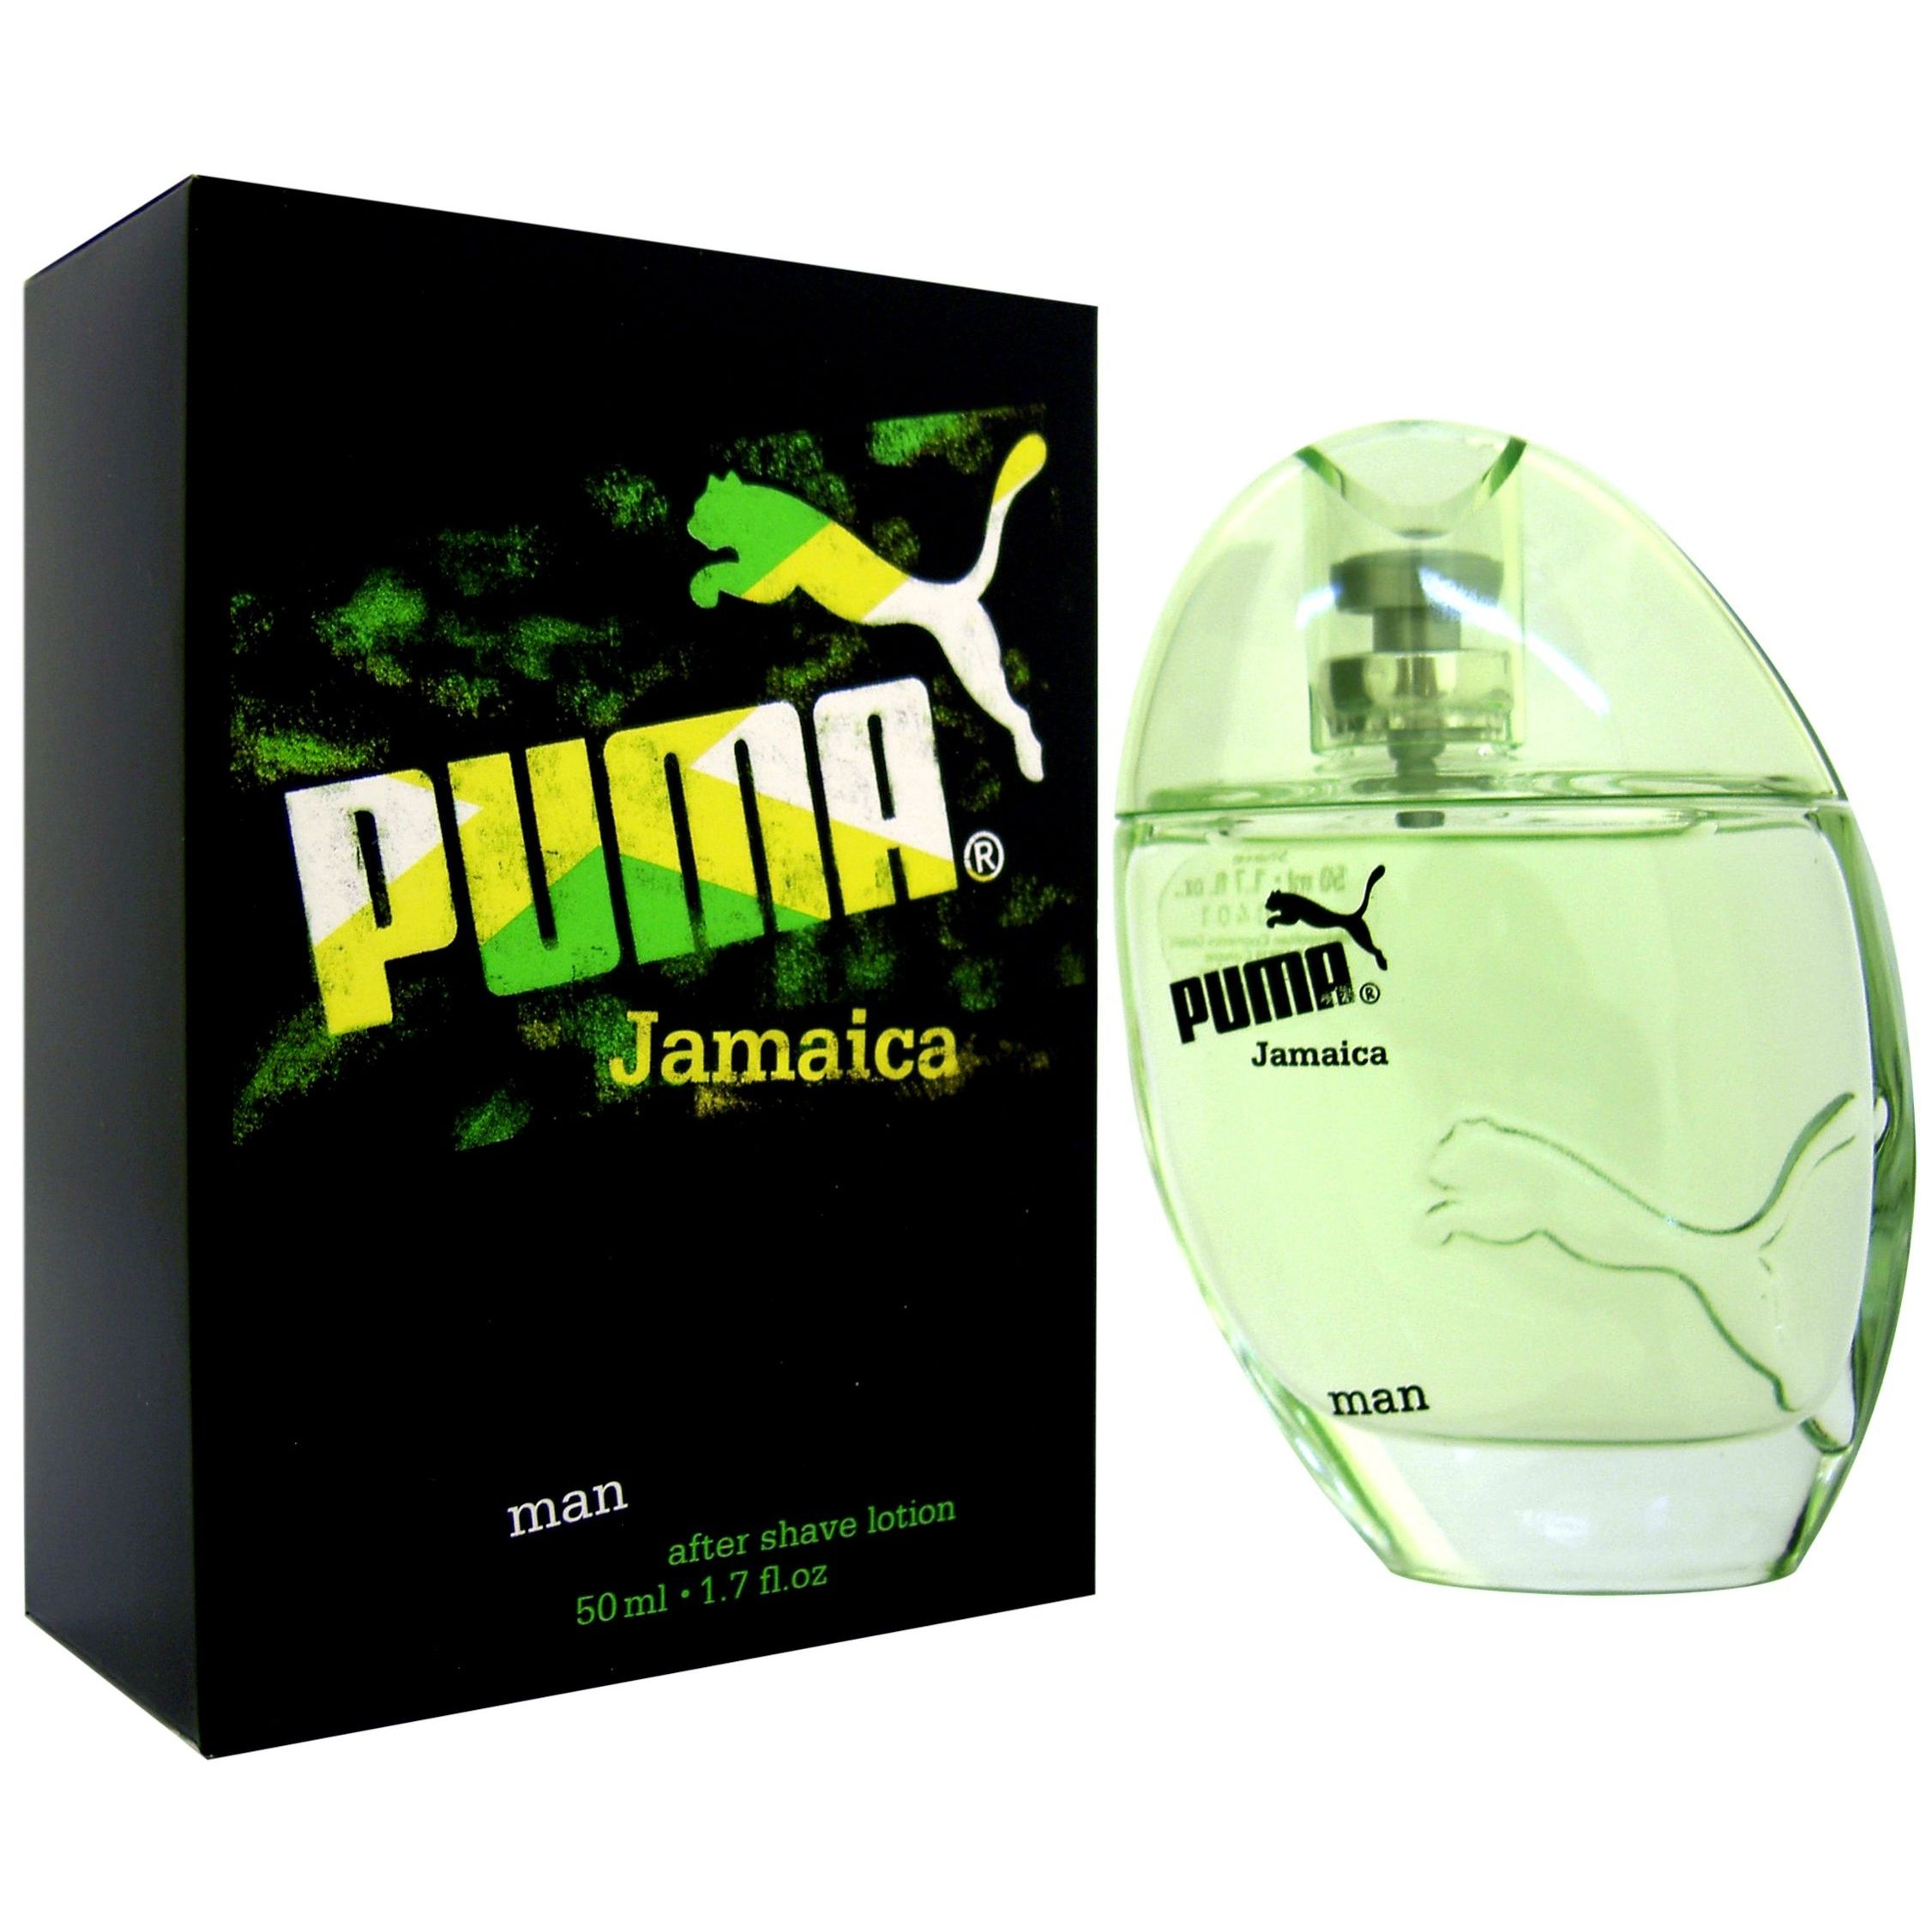 puma jamaica parfum man